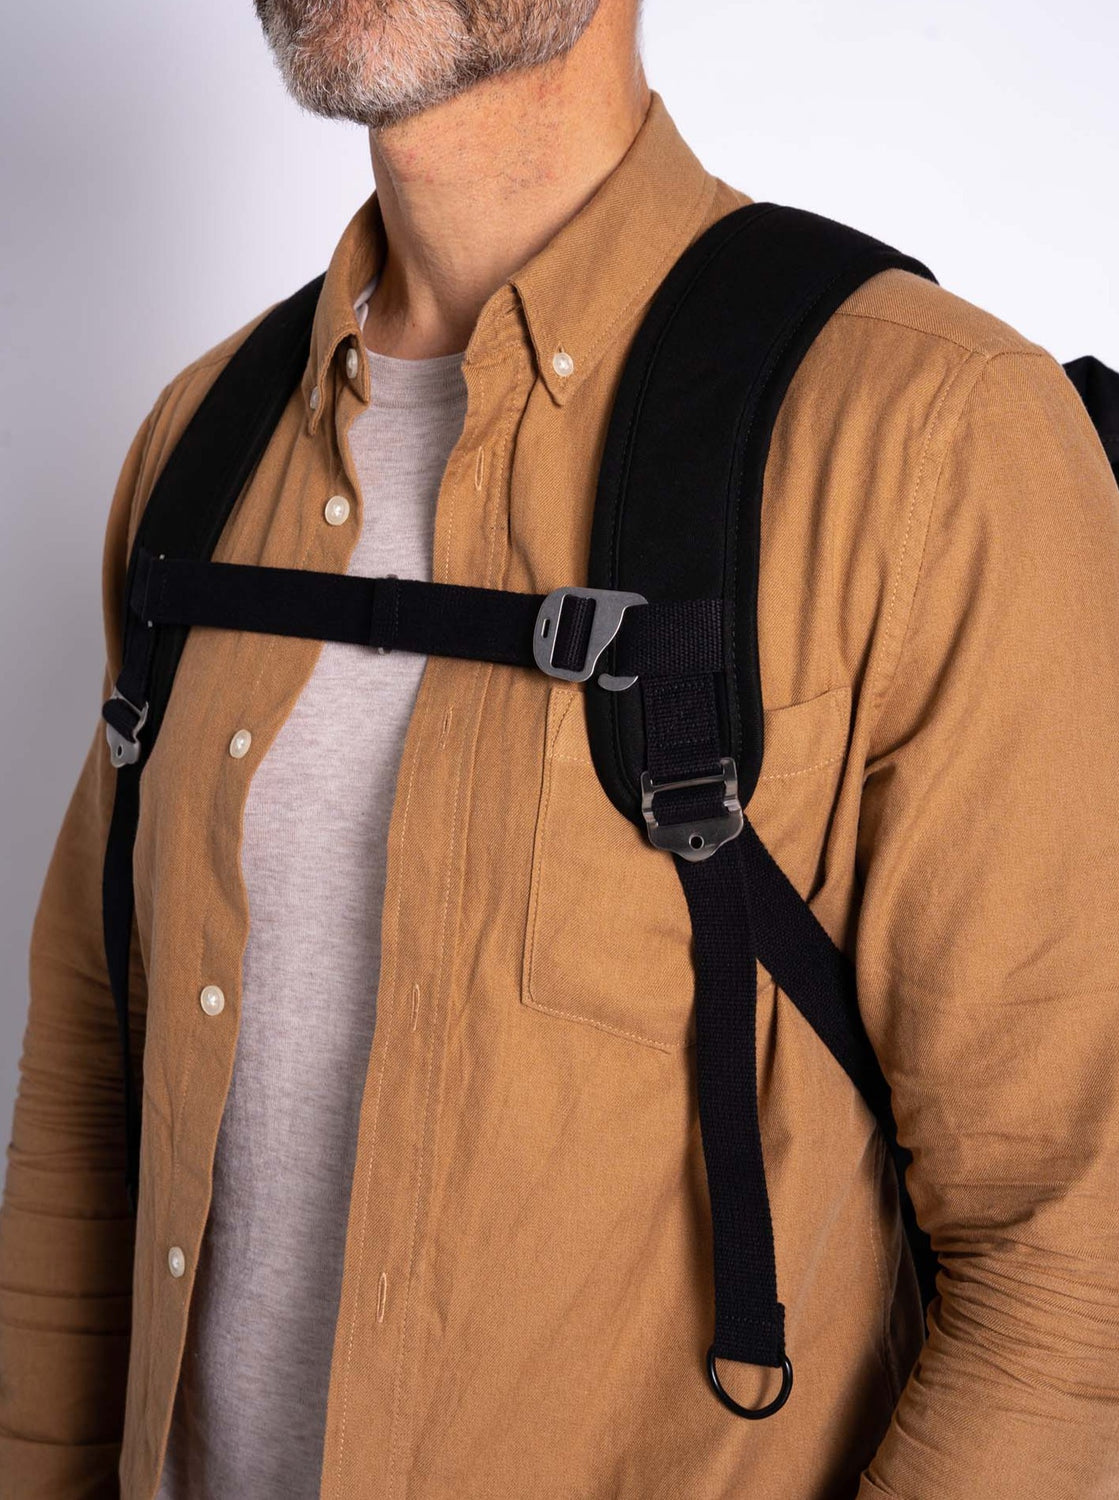 Buy Crossbody Shoulder Bag Chest Bag Harness Bag Travel Backpack Online in  India 